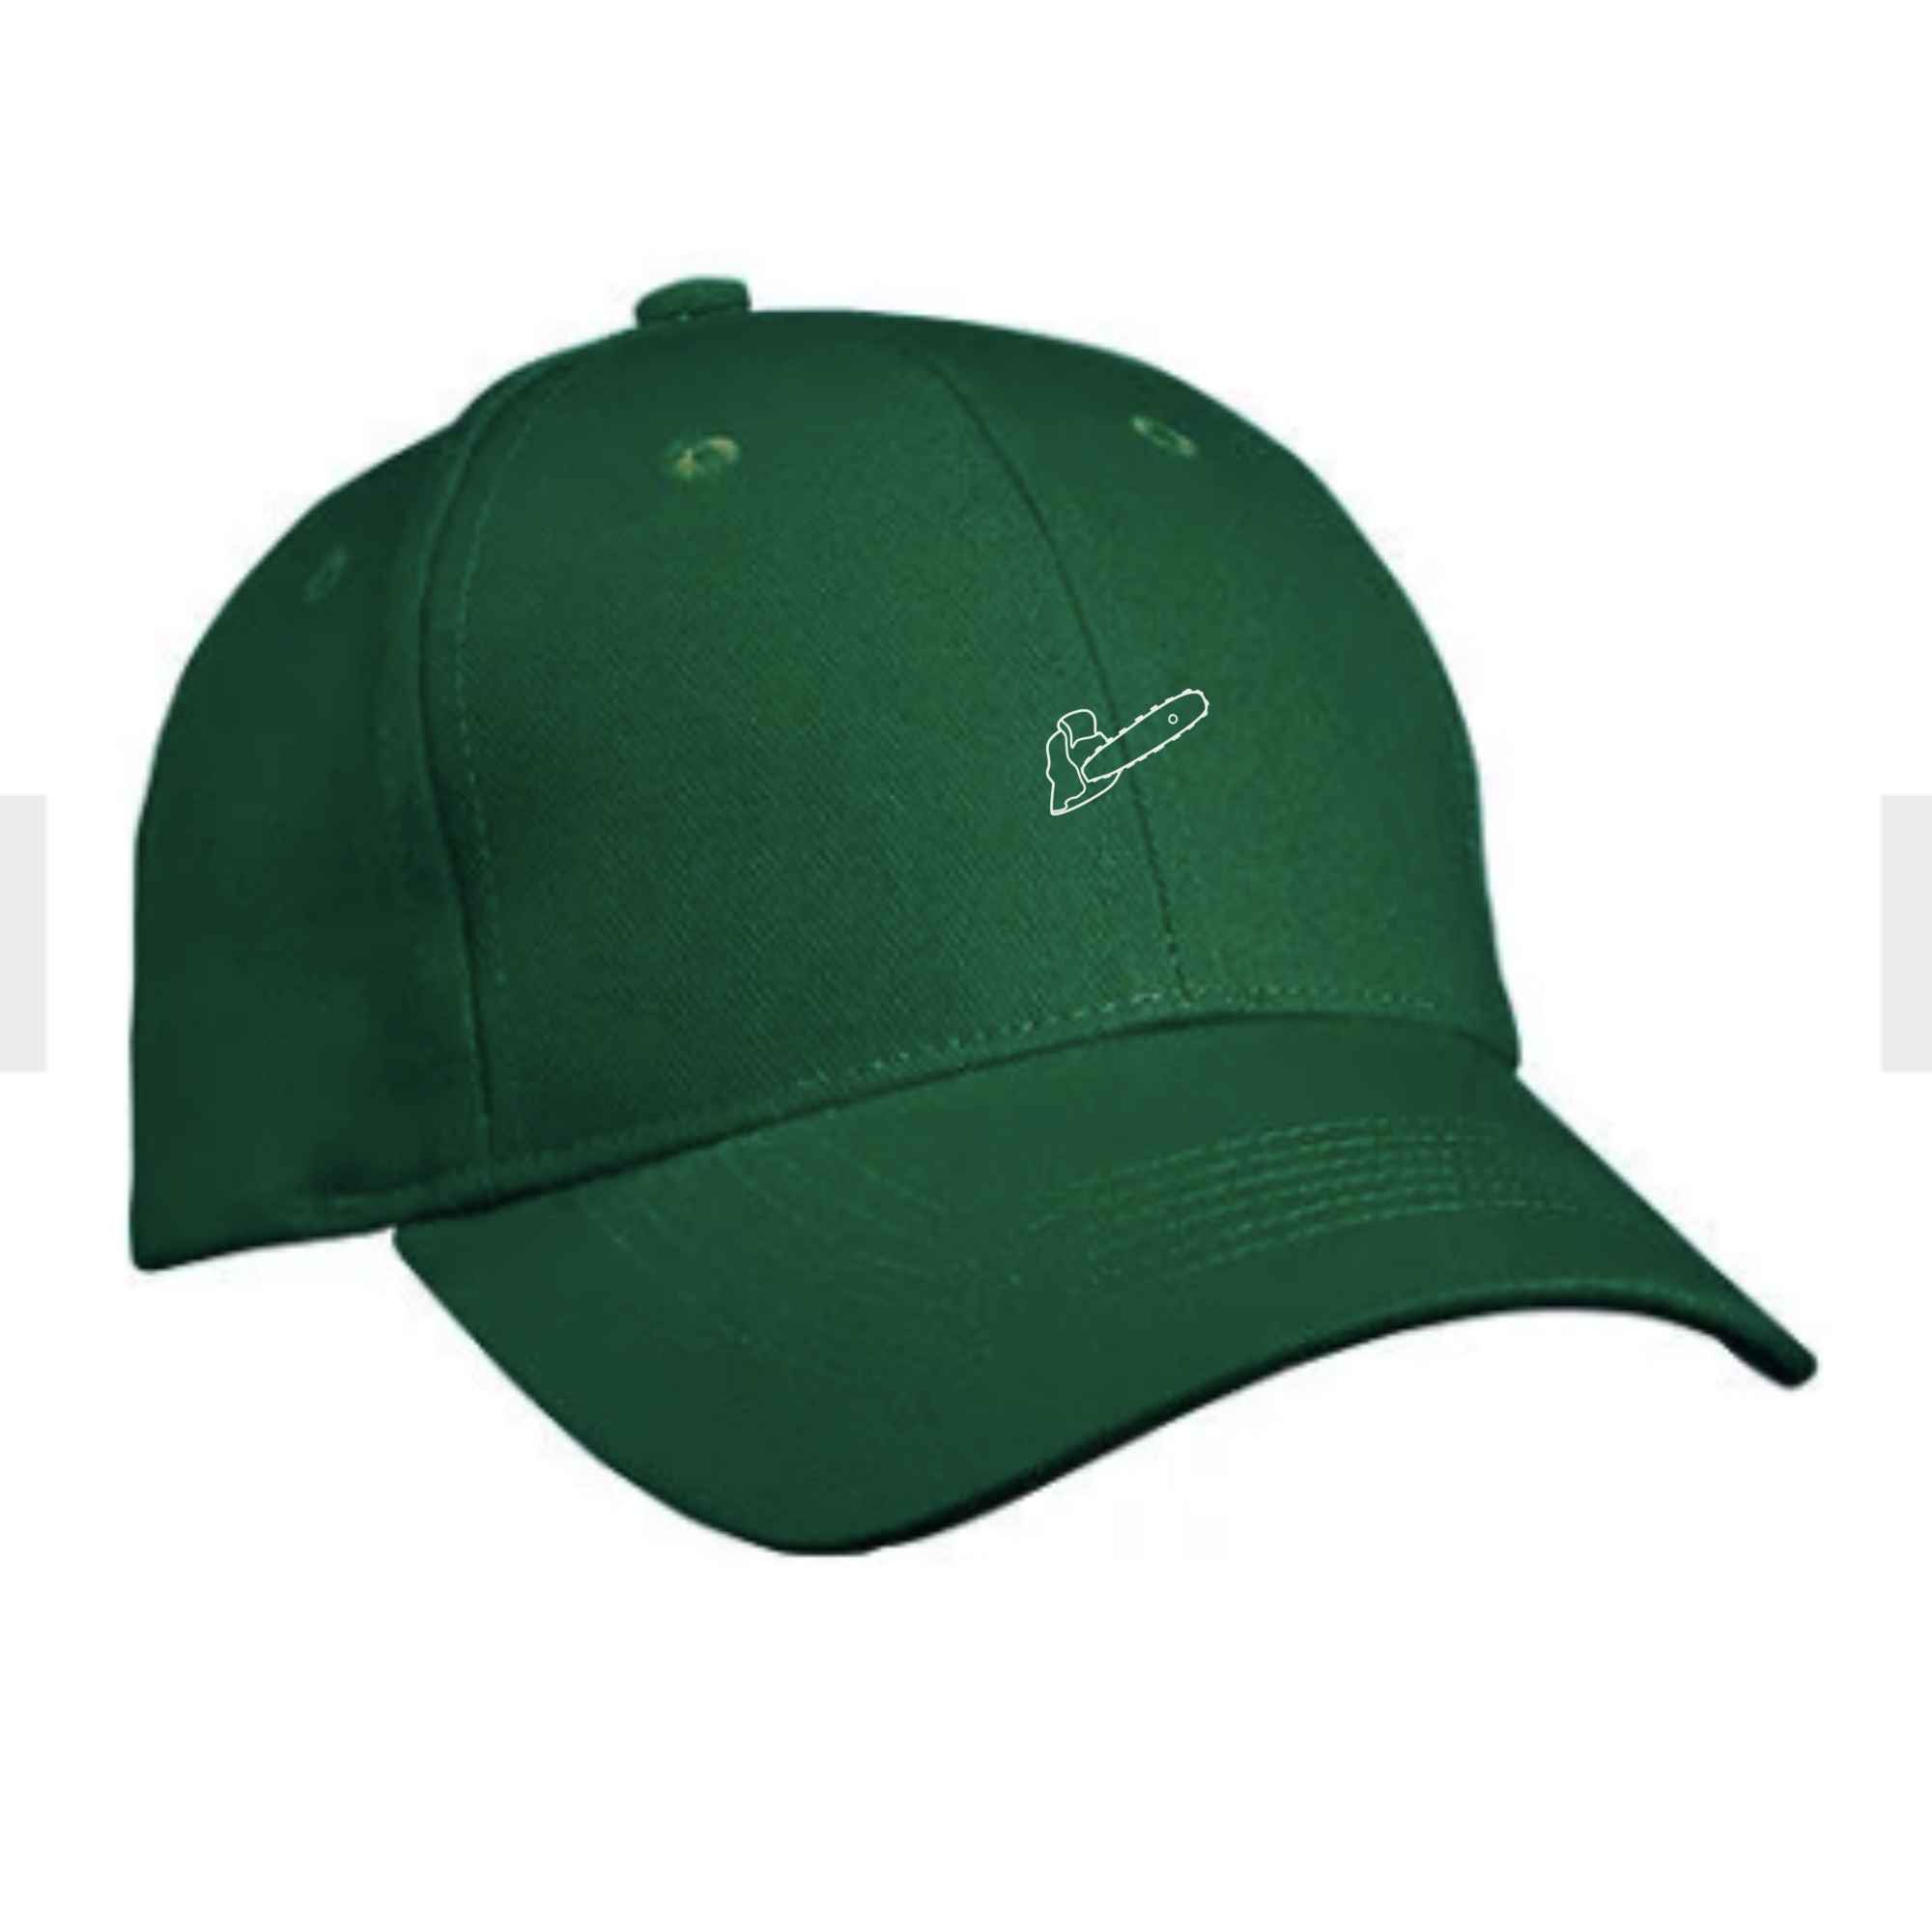 Cap mit Motorsägen-Motiv bestickt in Farbe Grün